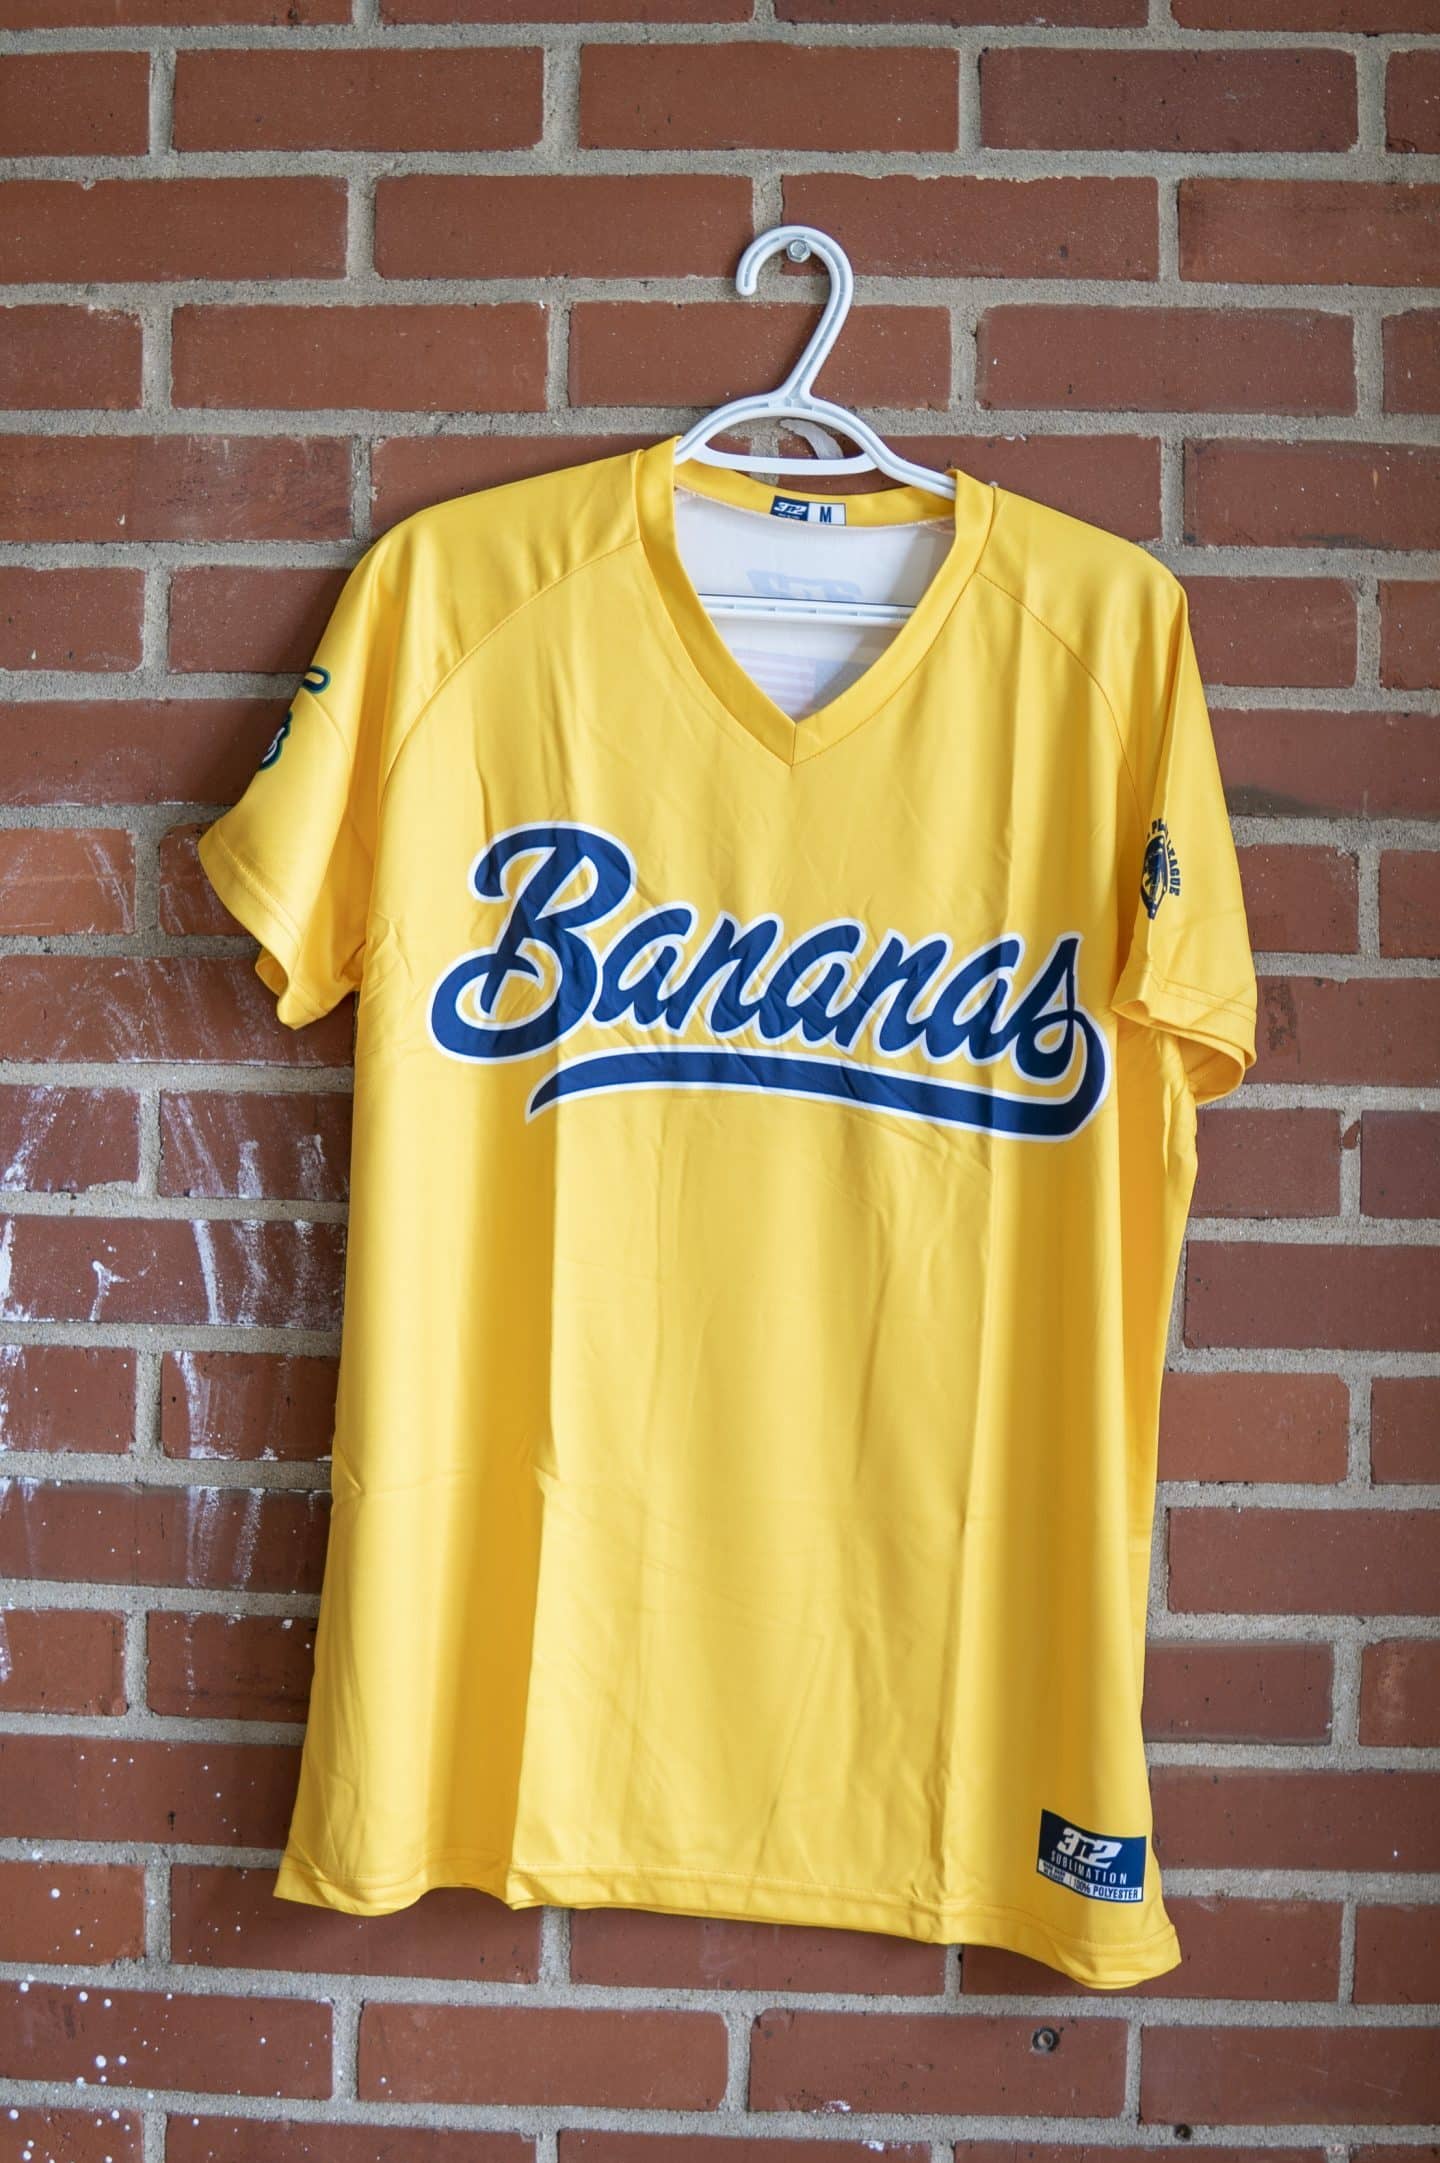 Yellow Jersey - The Savannah Bananas